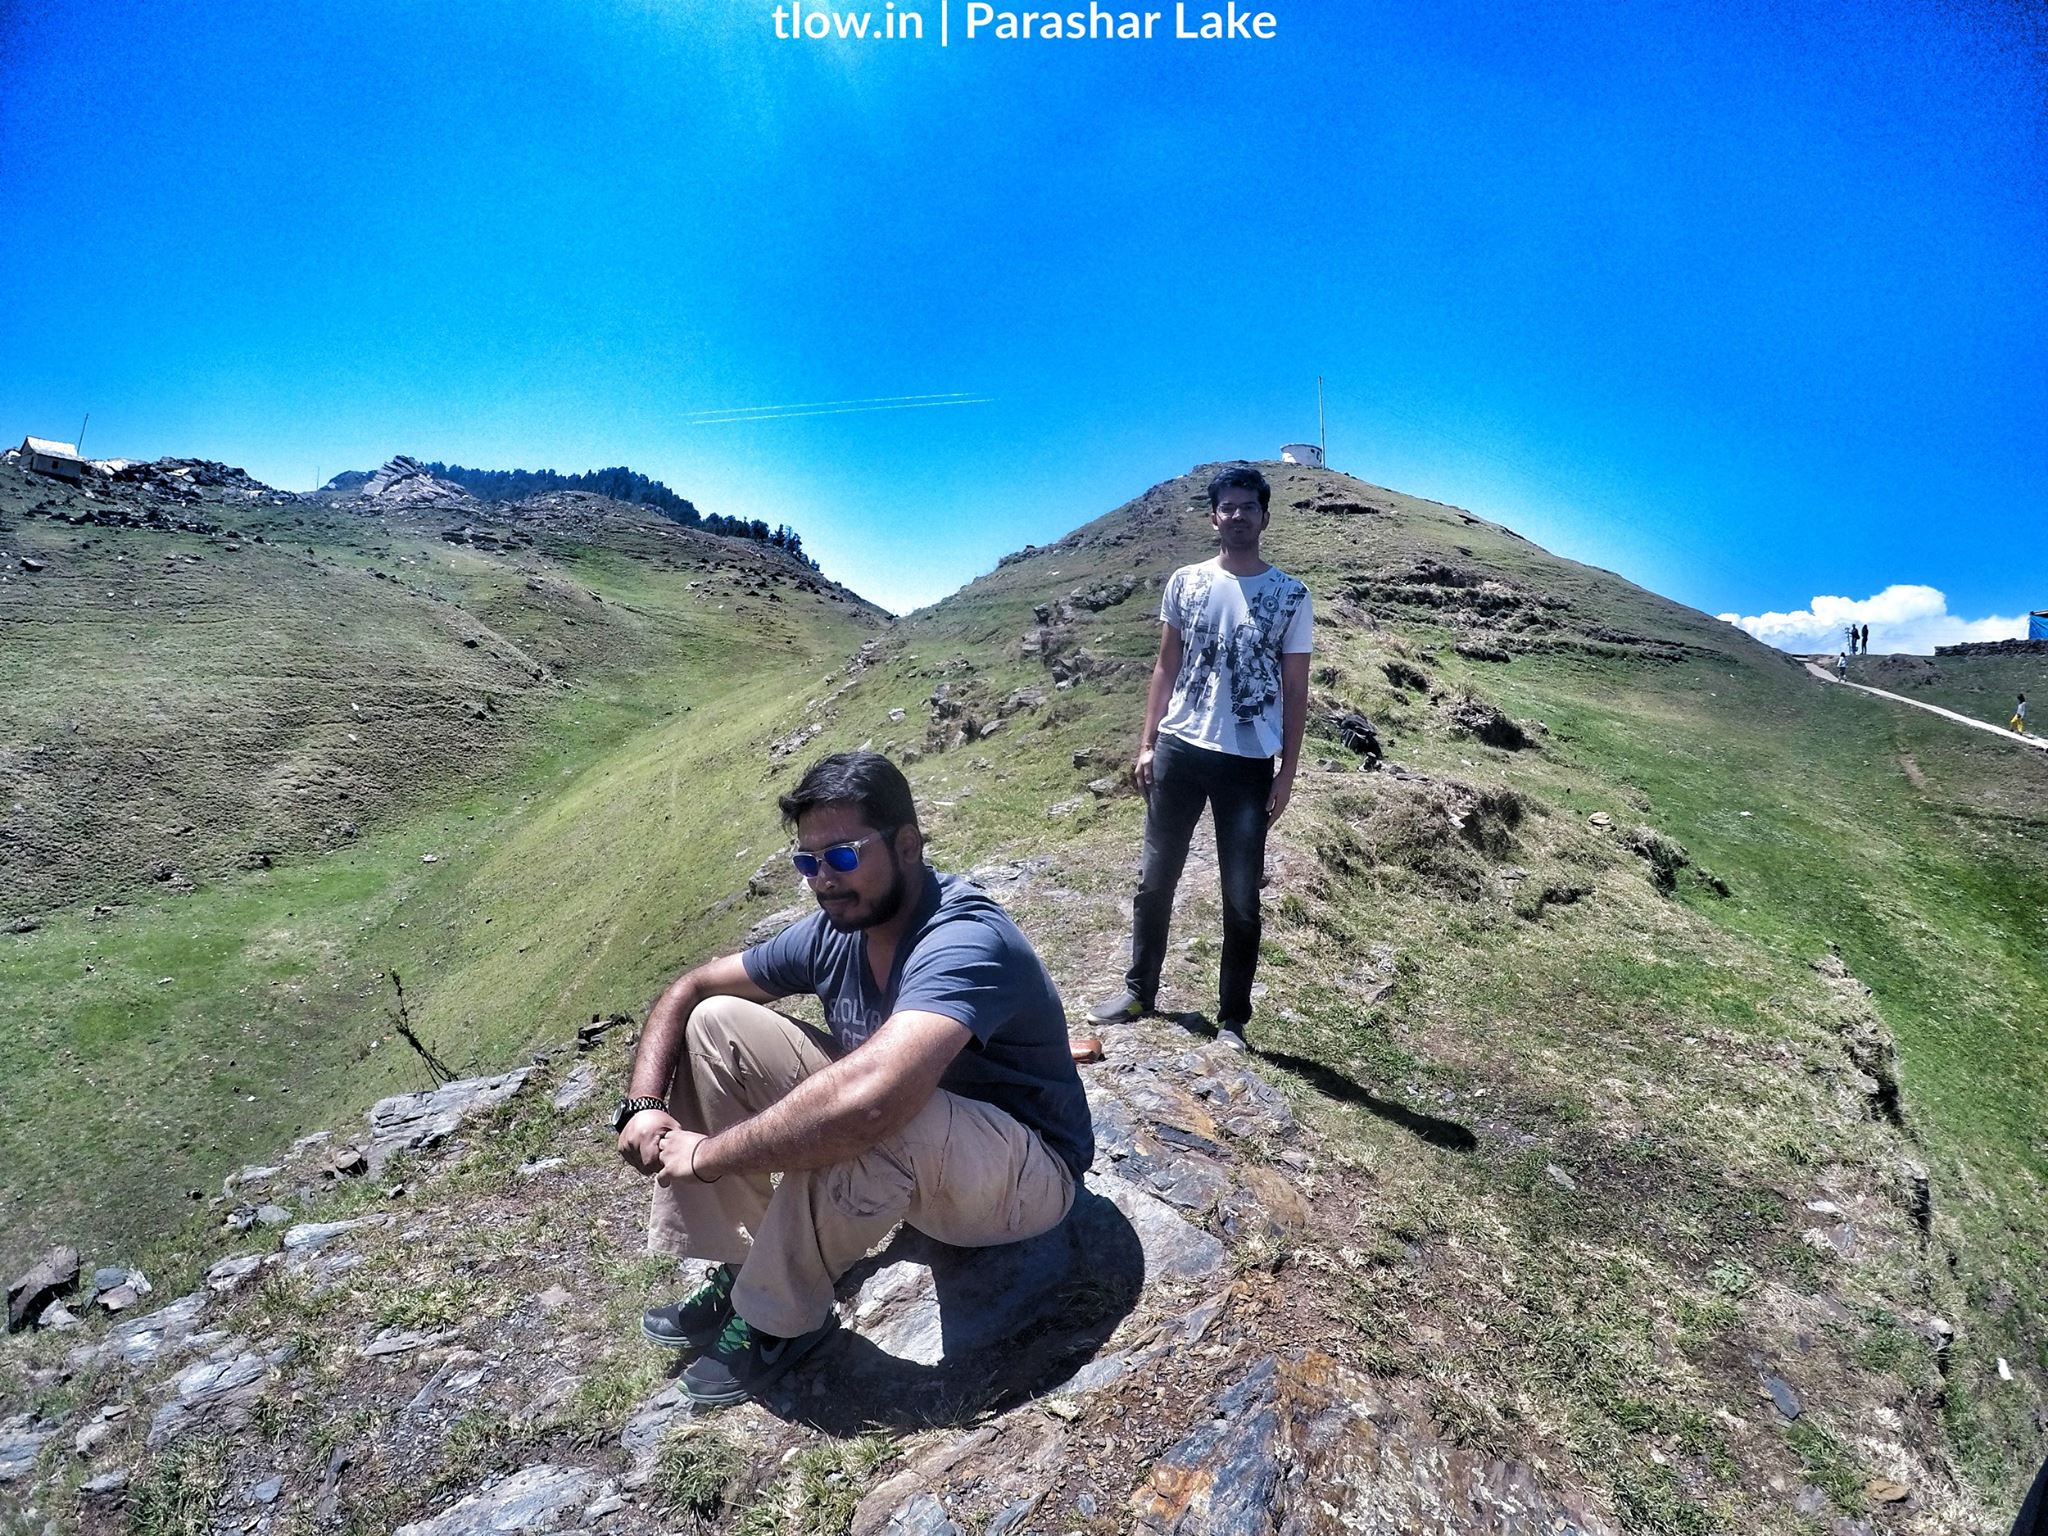 Parashar lake